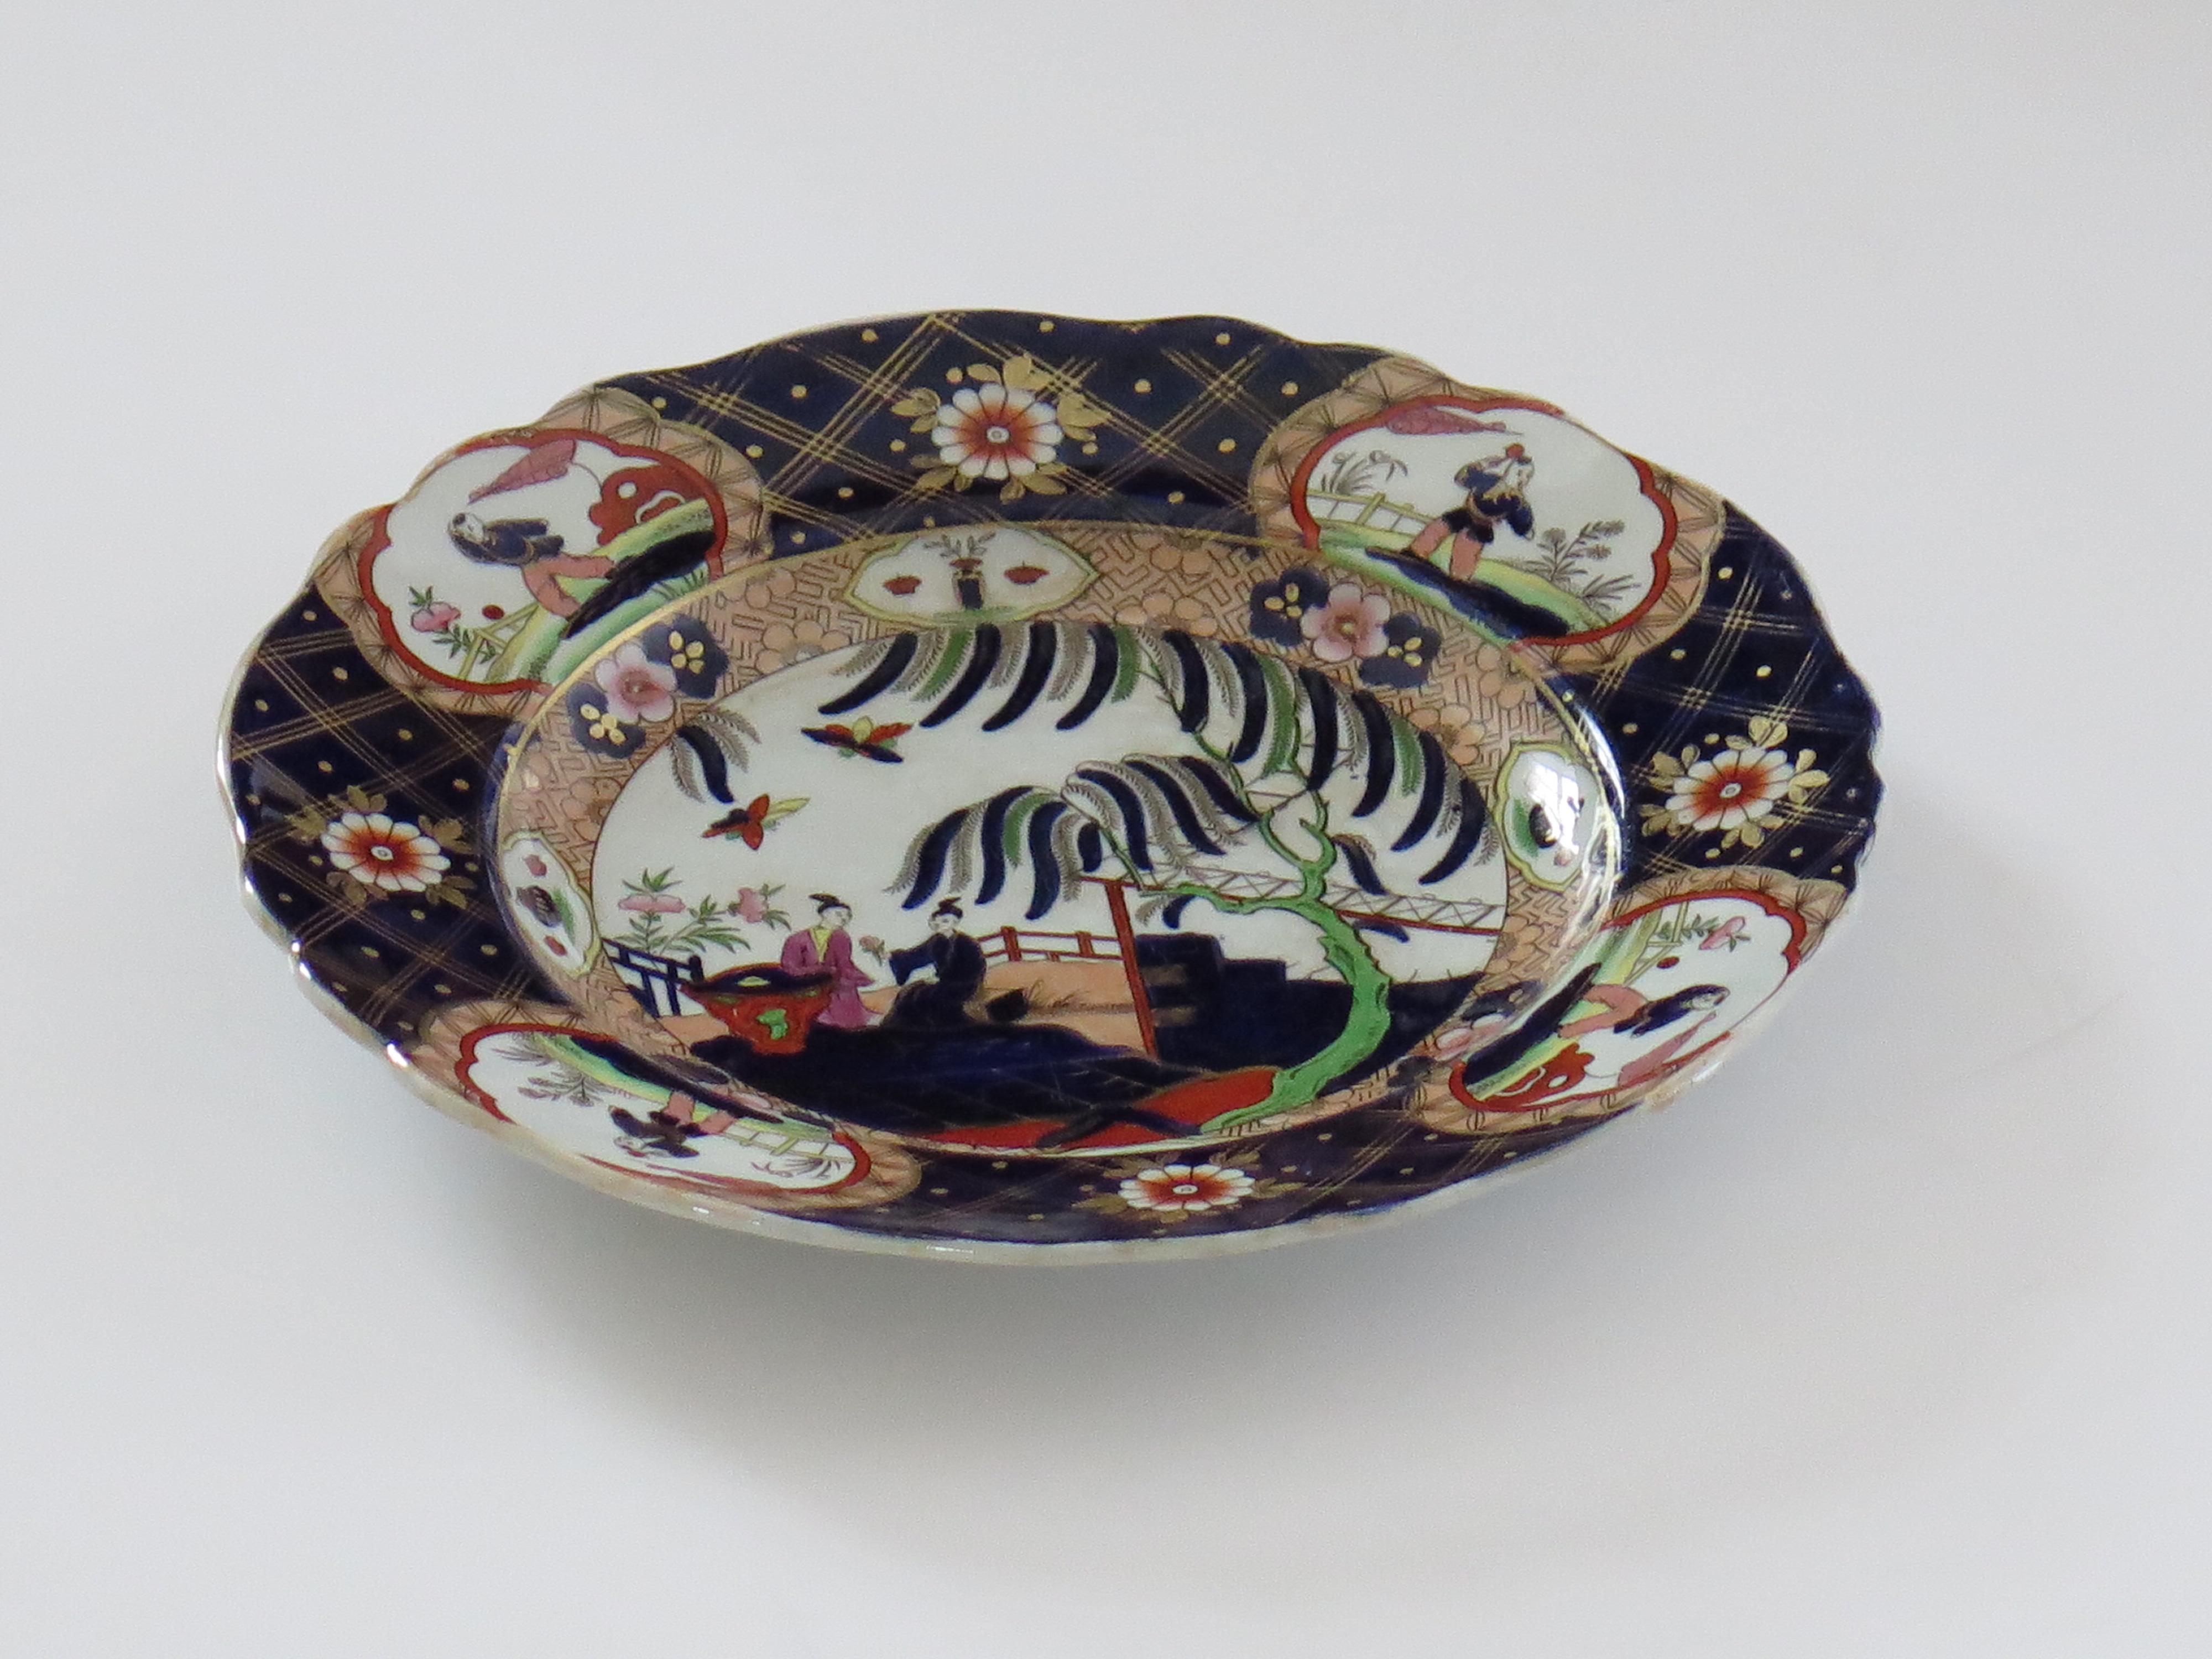 Il s'agit d'une assiette très décorative de John Ridgway, datant de la période Guillaume IV du XIXe siècle, en pierre de Chine impériale.

L'assiette est bien empotée et son bord est ondulé.

L'assiette a été soigneusement peinte à la main dans des